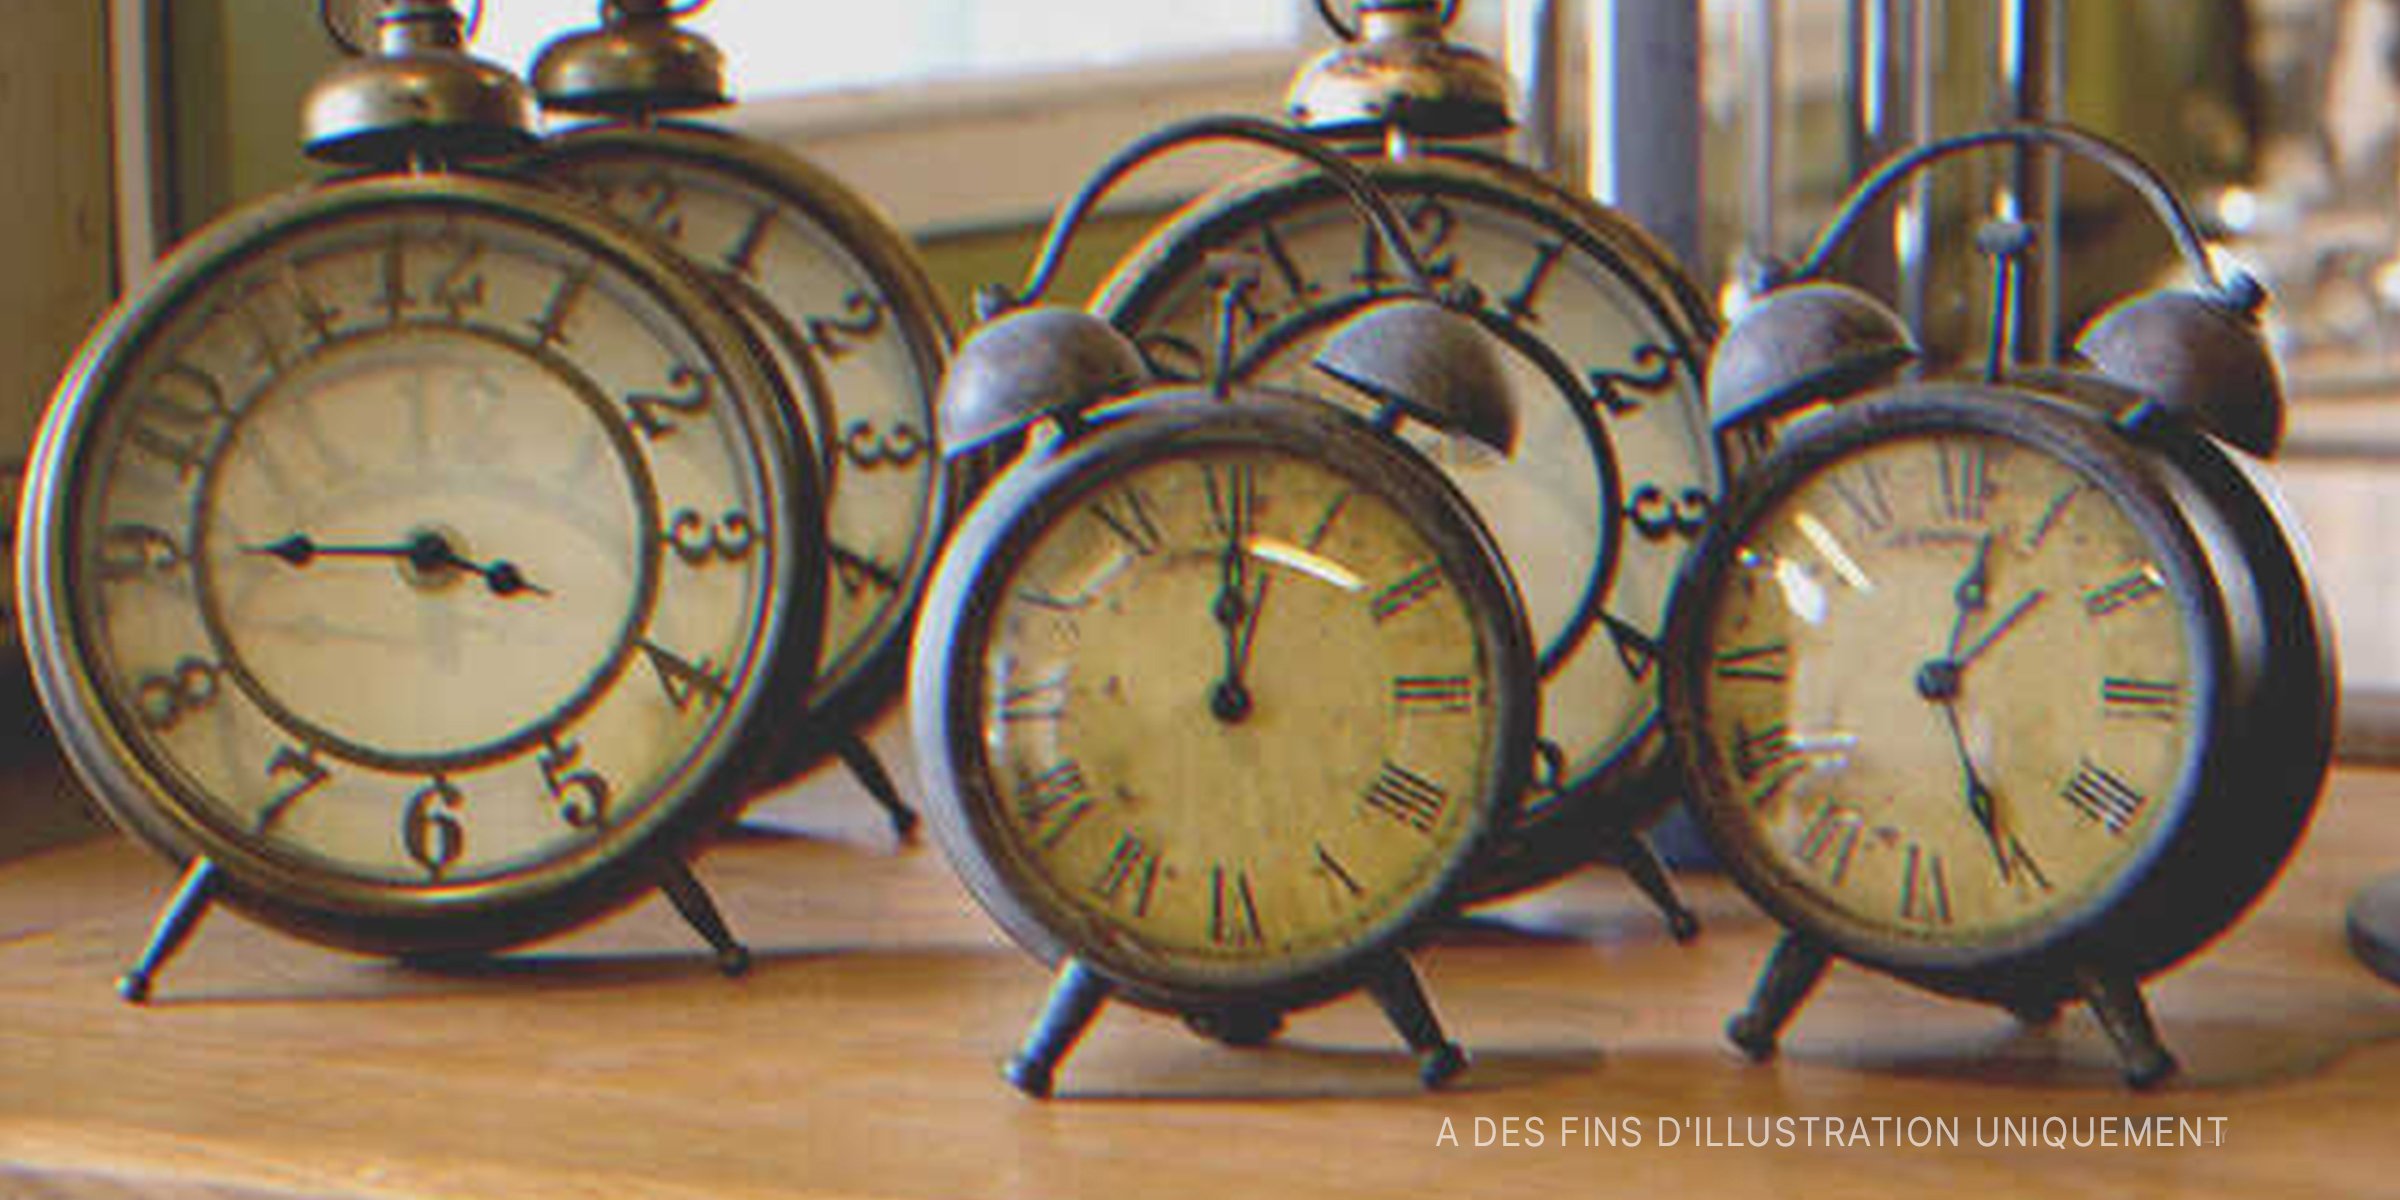 Cinq réveils vintage sur une table | Photo : Shutterstock